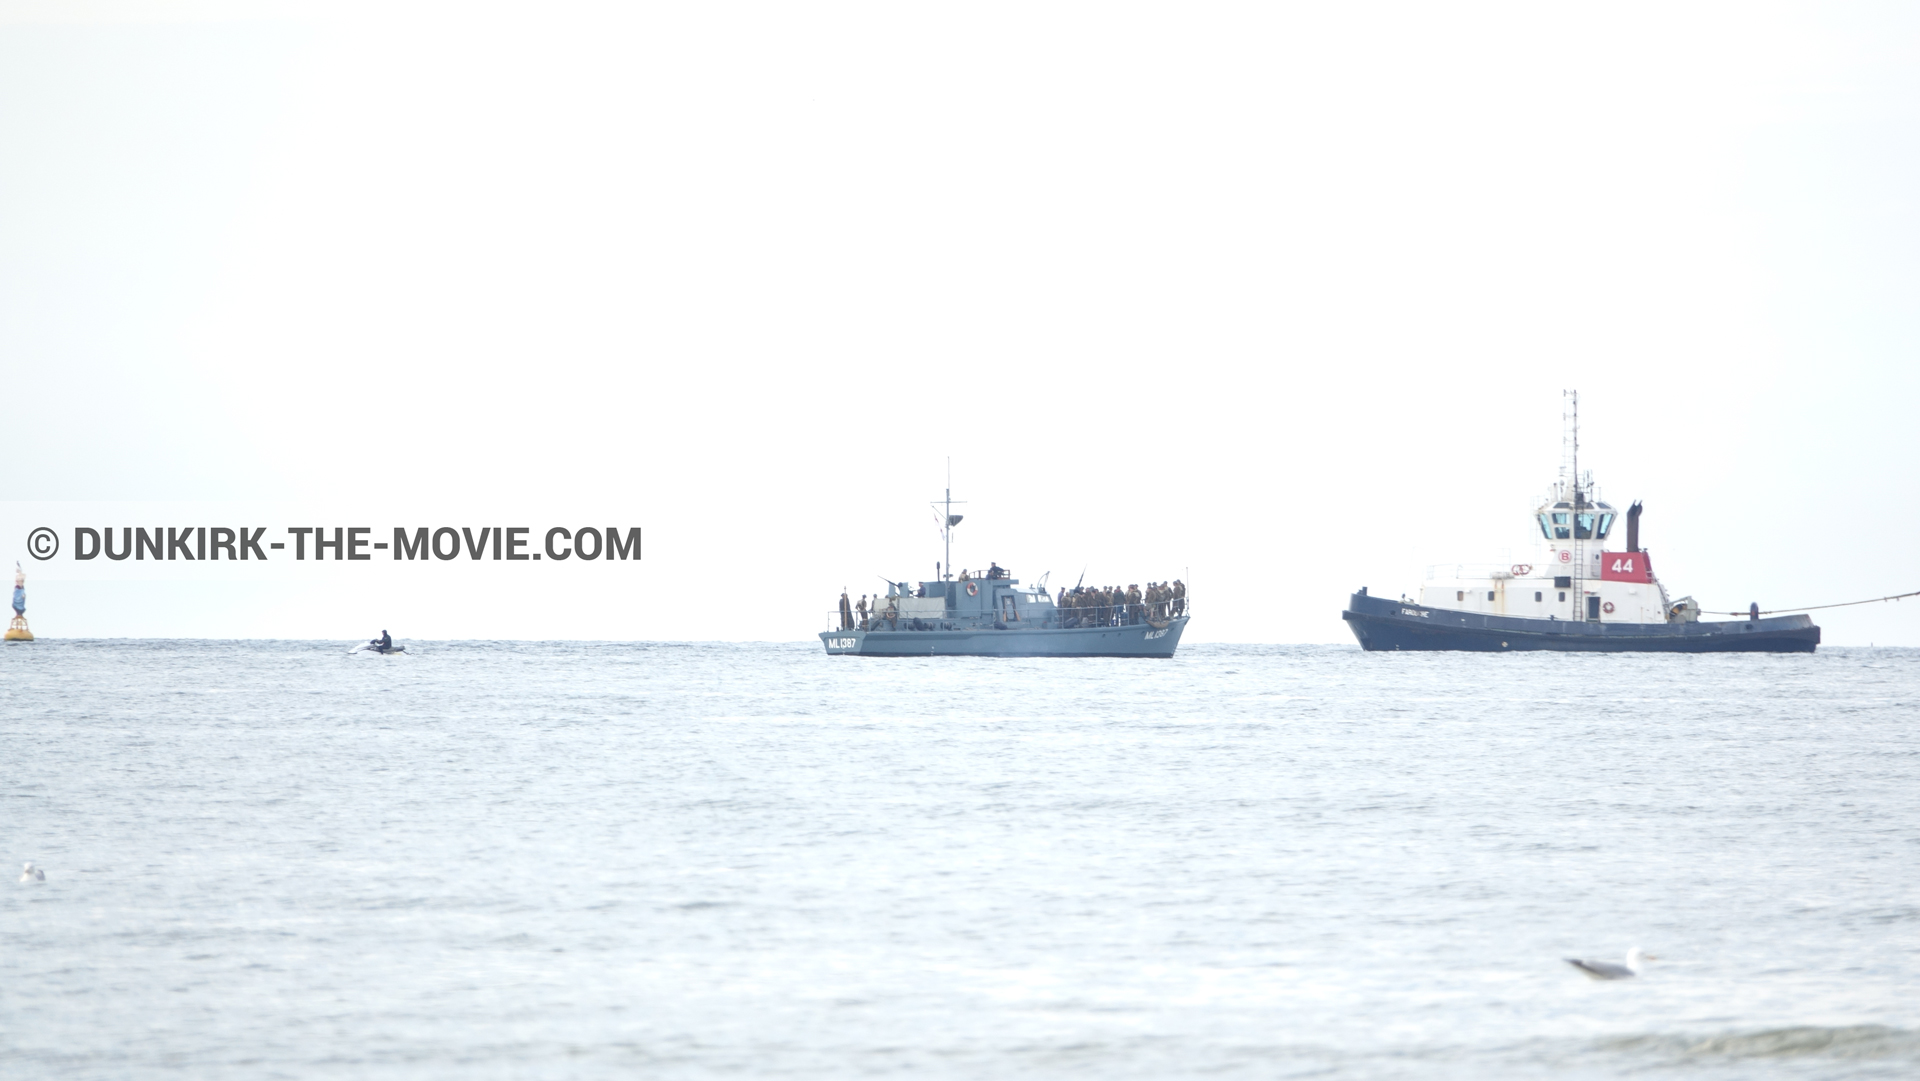 Fotos con HMS Medusa - ML1387,  durante el rodaje de la película Dunkerque de Nolan